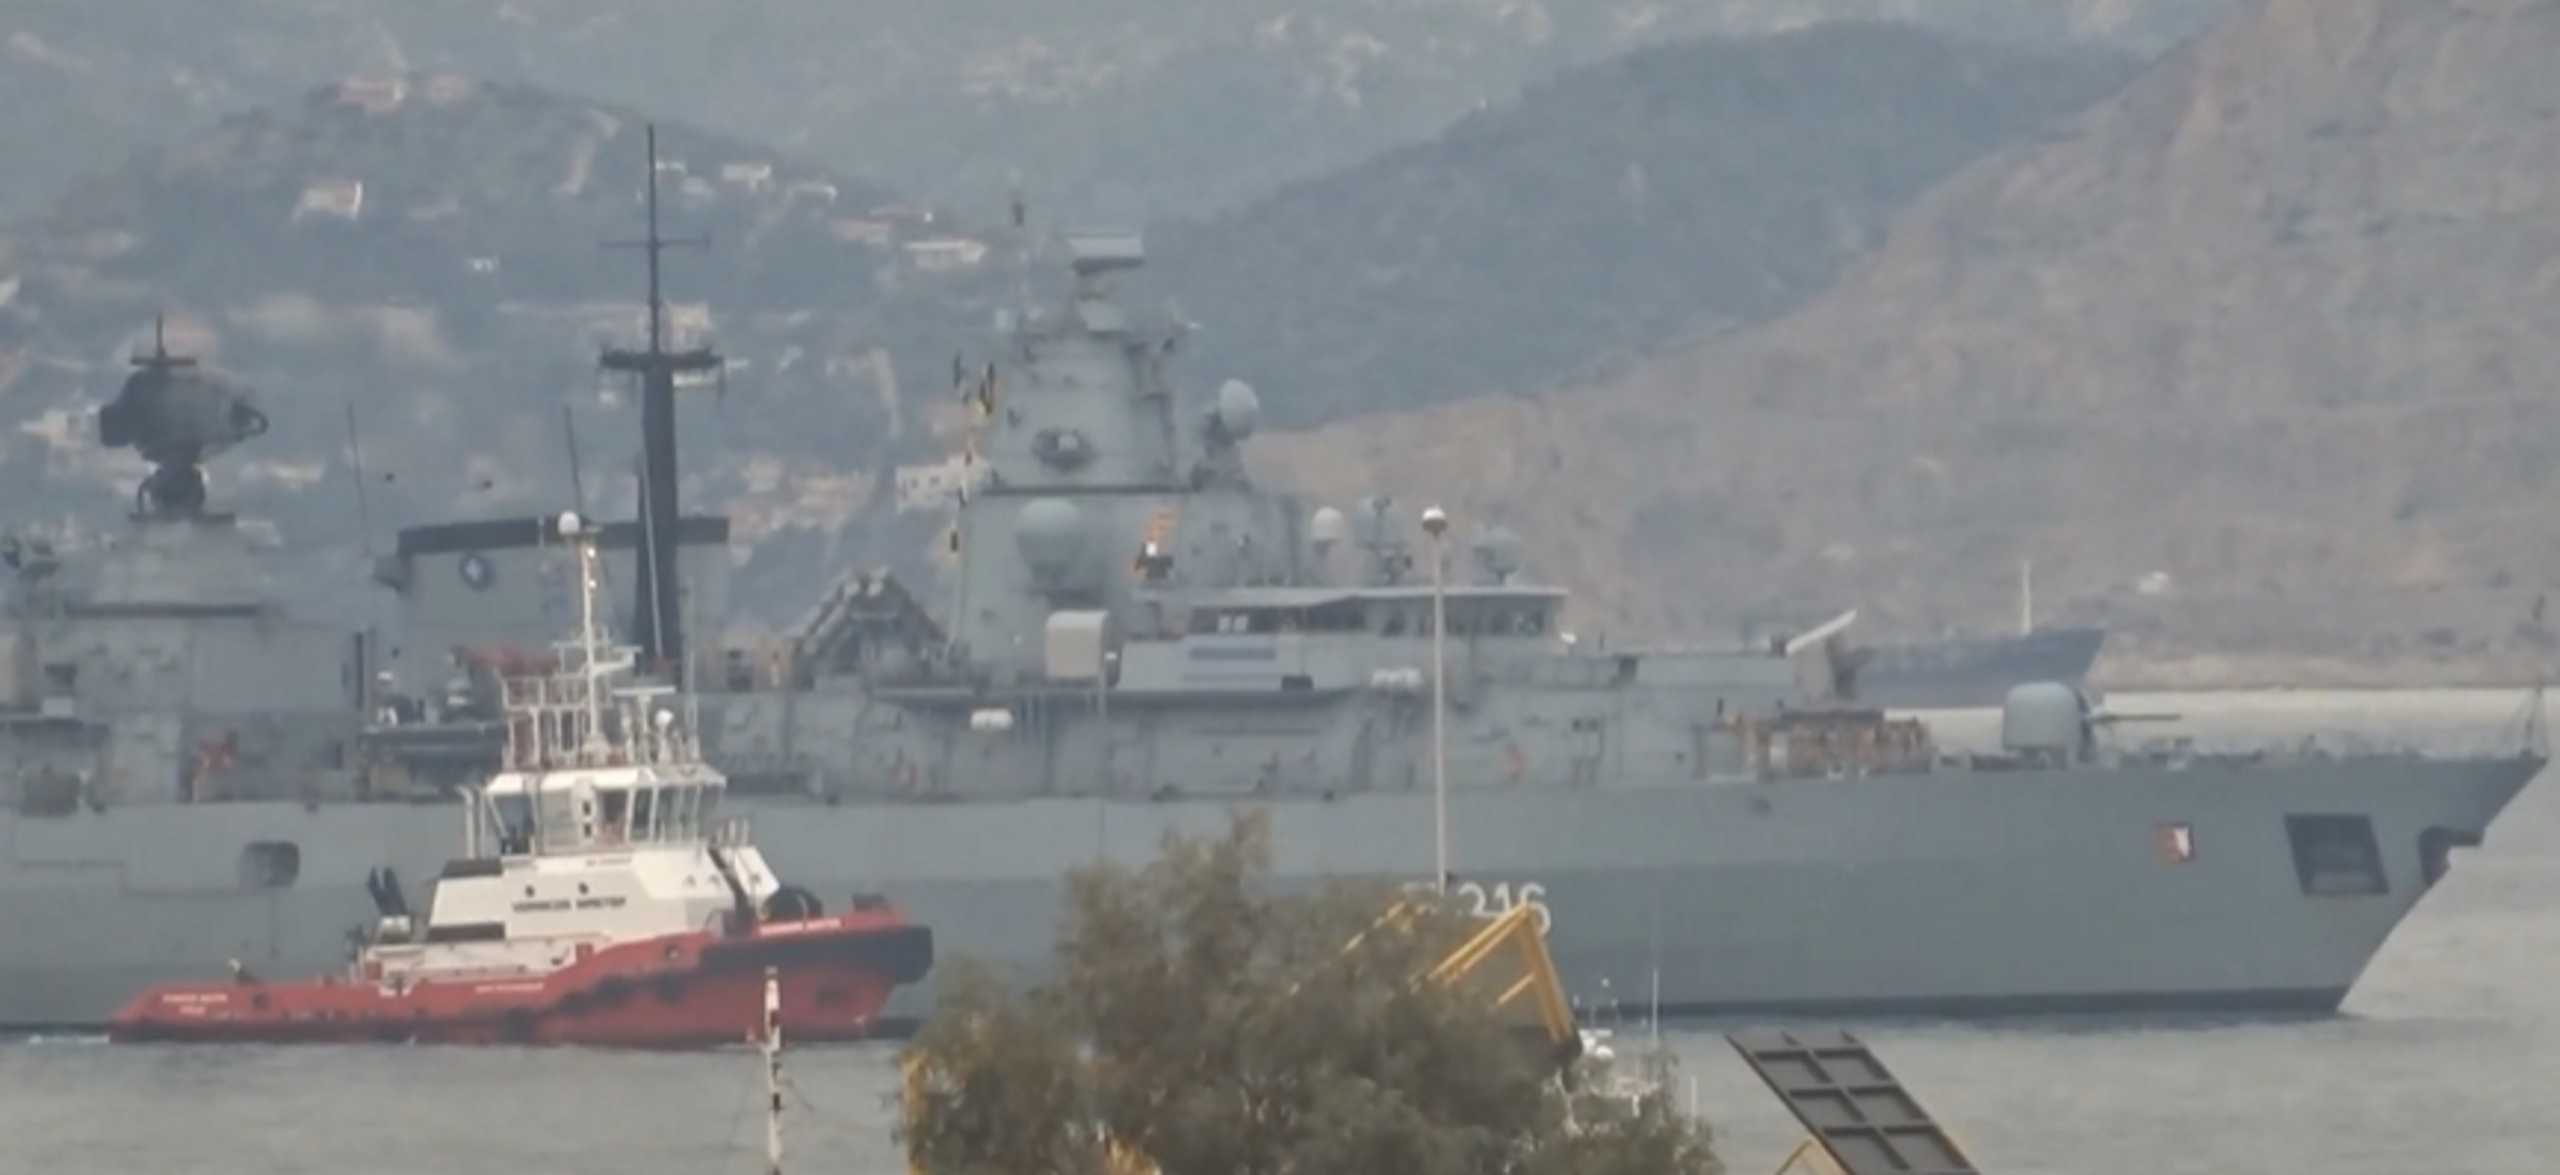 Γερμανική φρεγάτα του ΝΑΤΟ στο λιμάνι του Πειραιά – Βίντεο από την άφιξη του θαλάσσιου θηρίου